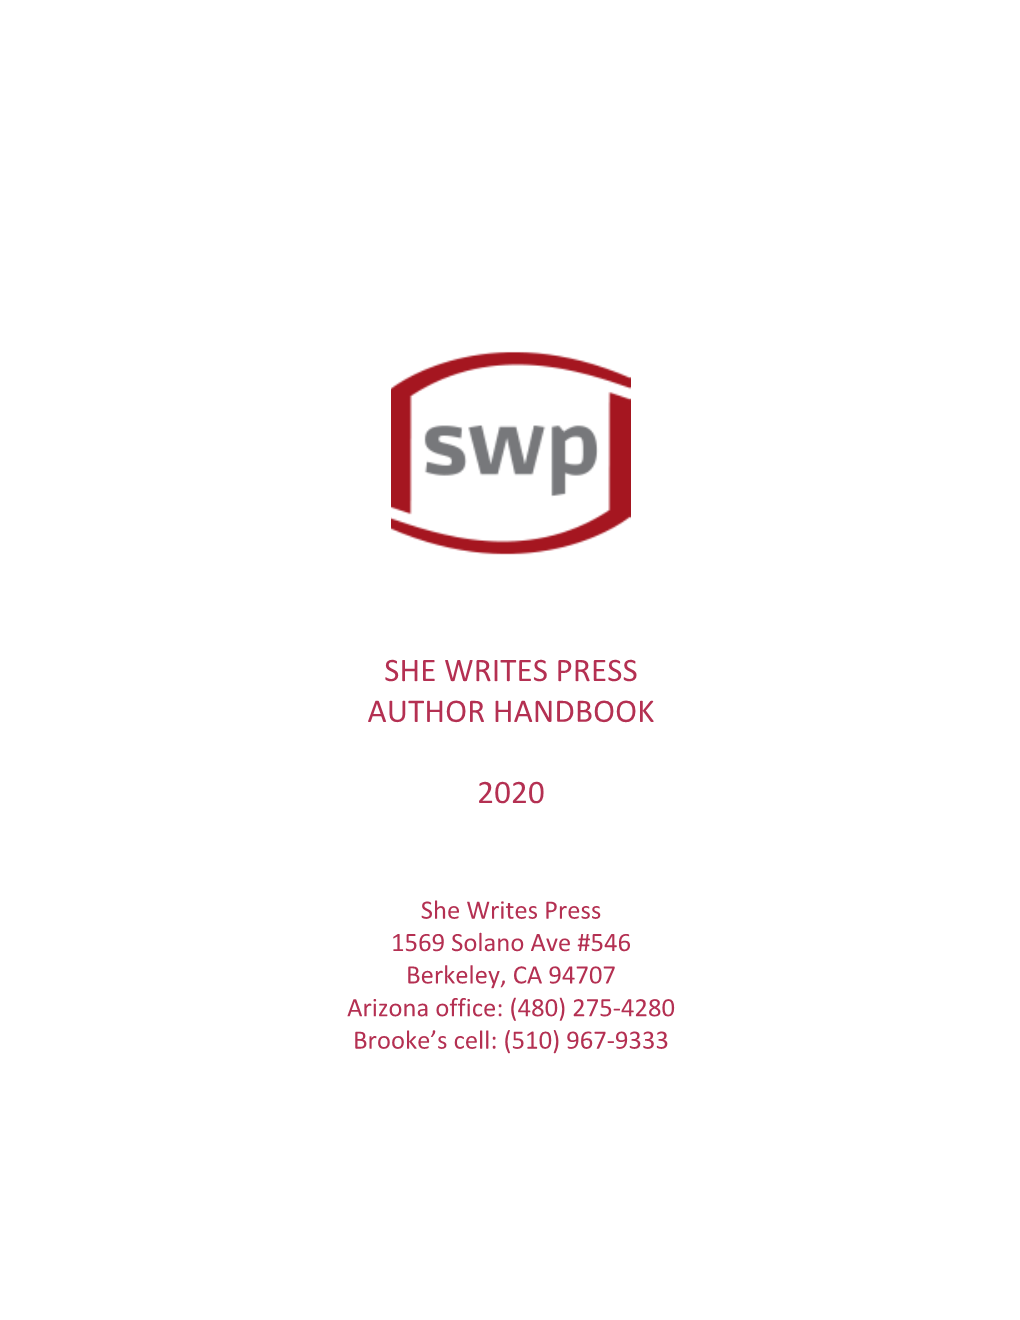 Download 2020 SWP Author Handbook